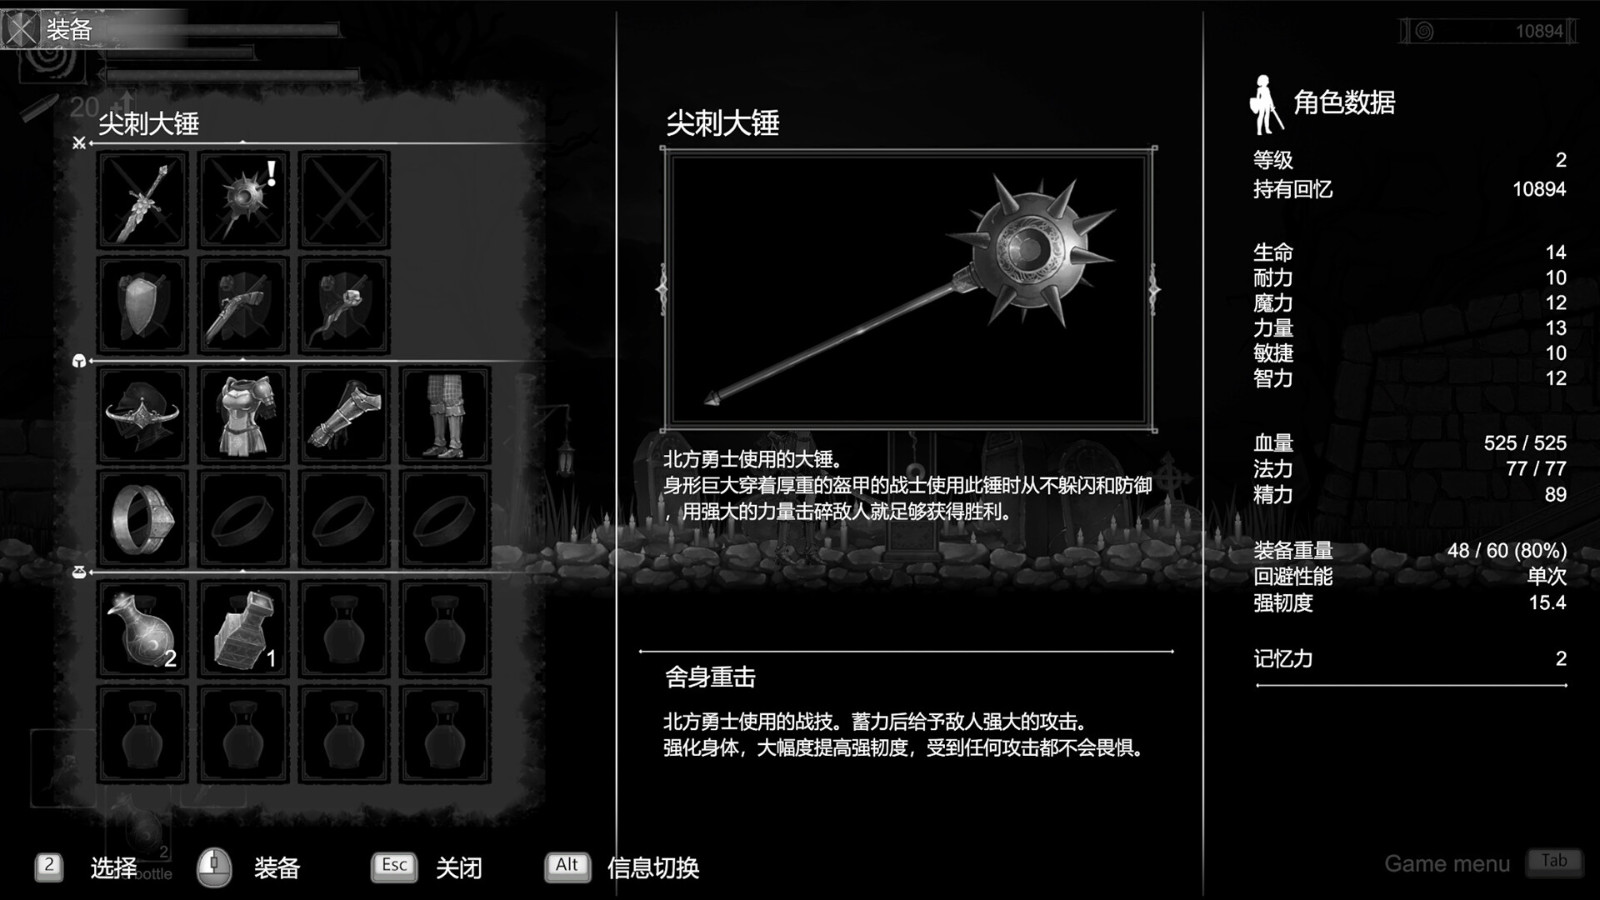 《漆乌太阳》Steam页里上线 反对于简体中文